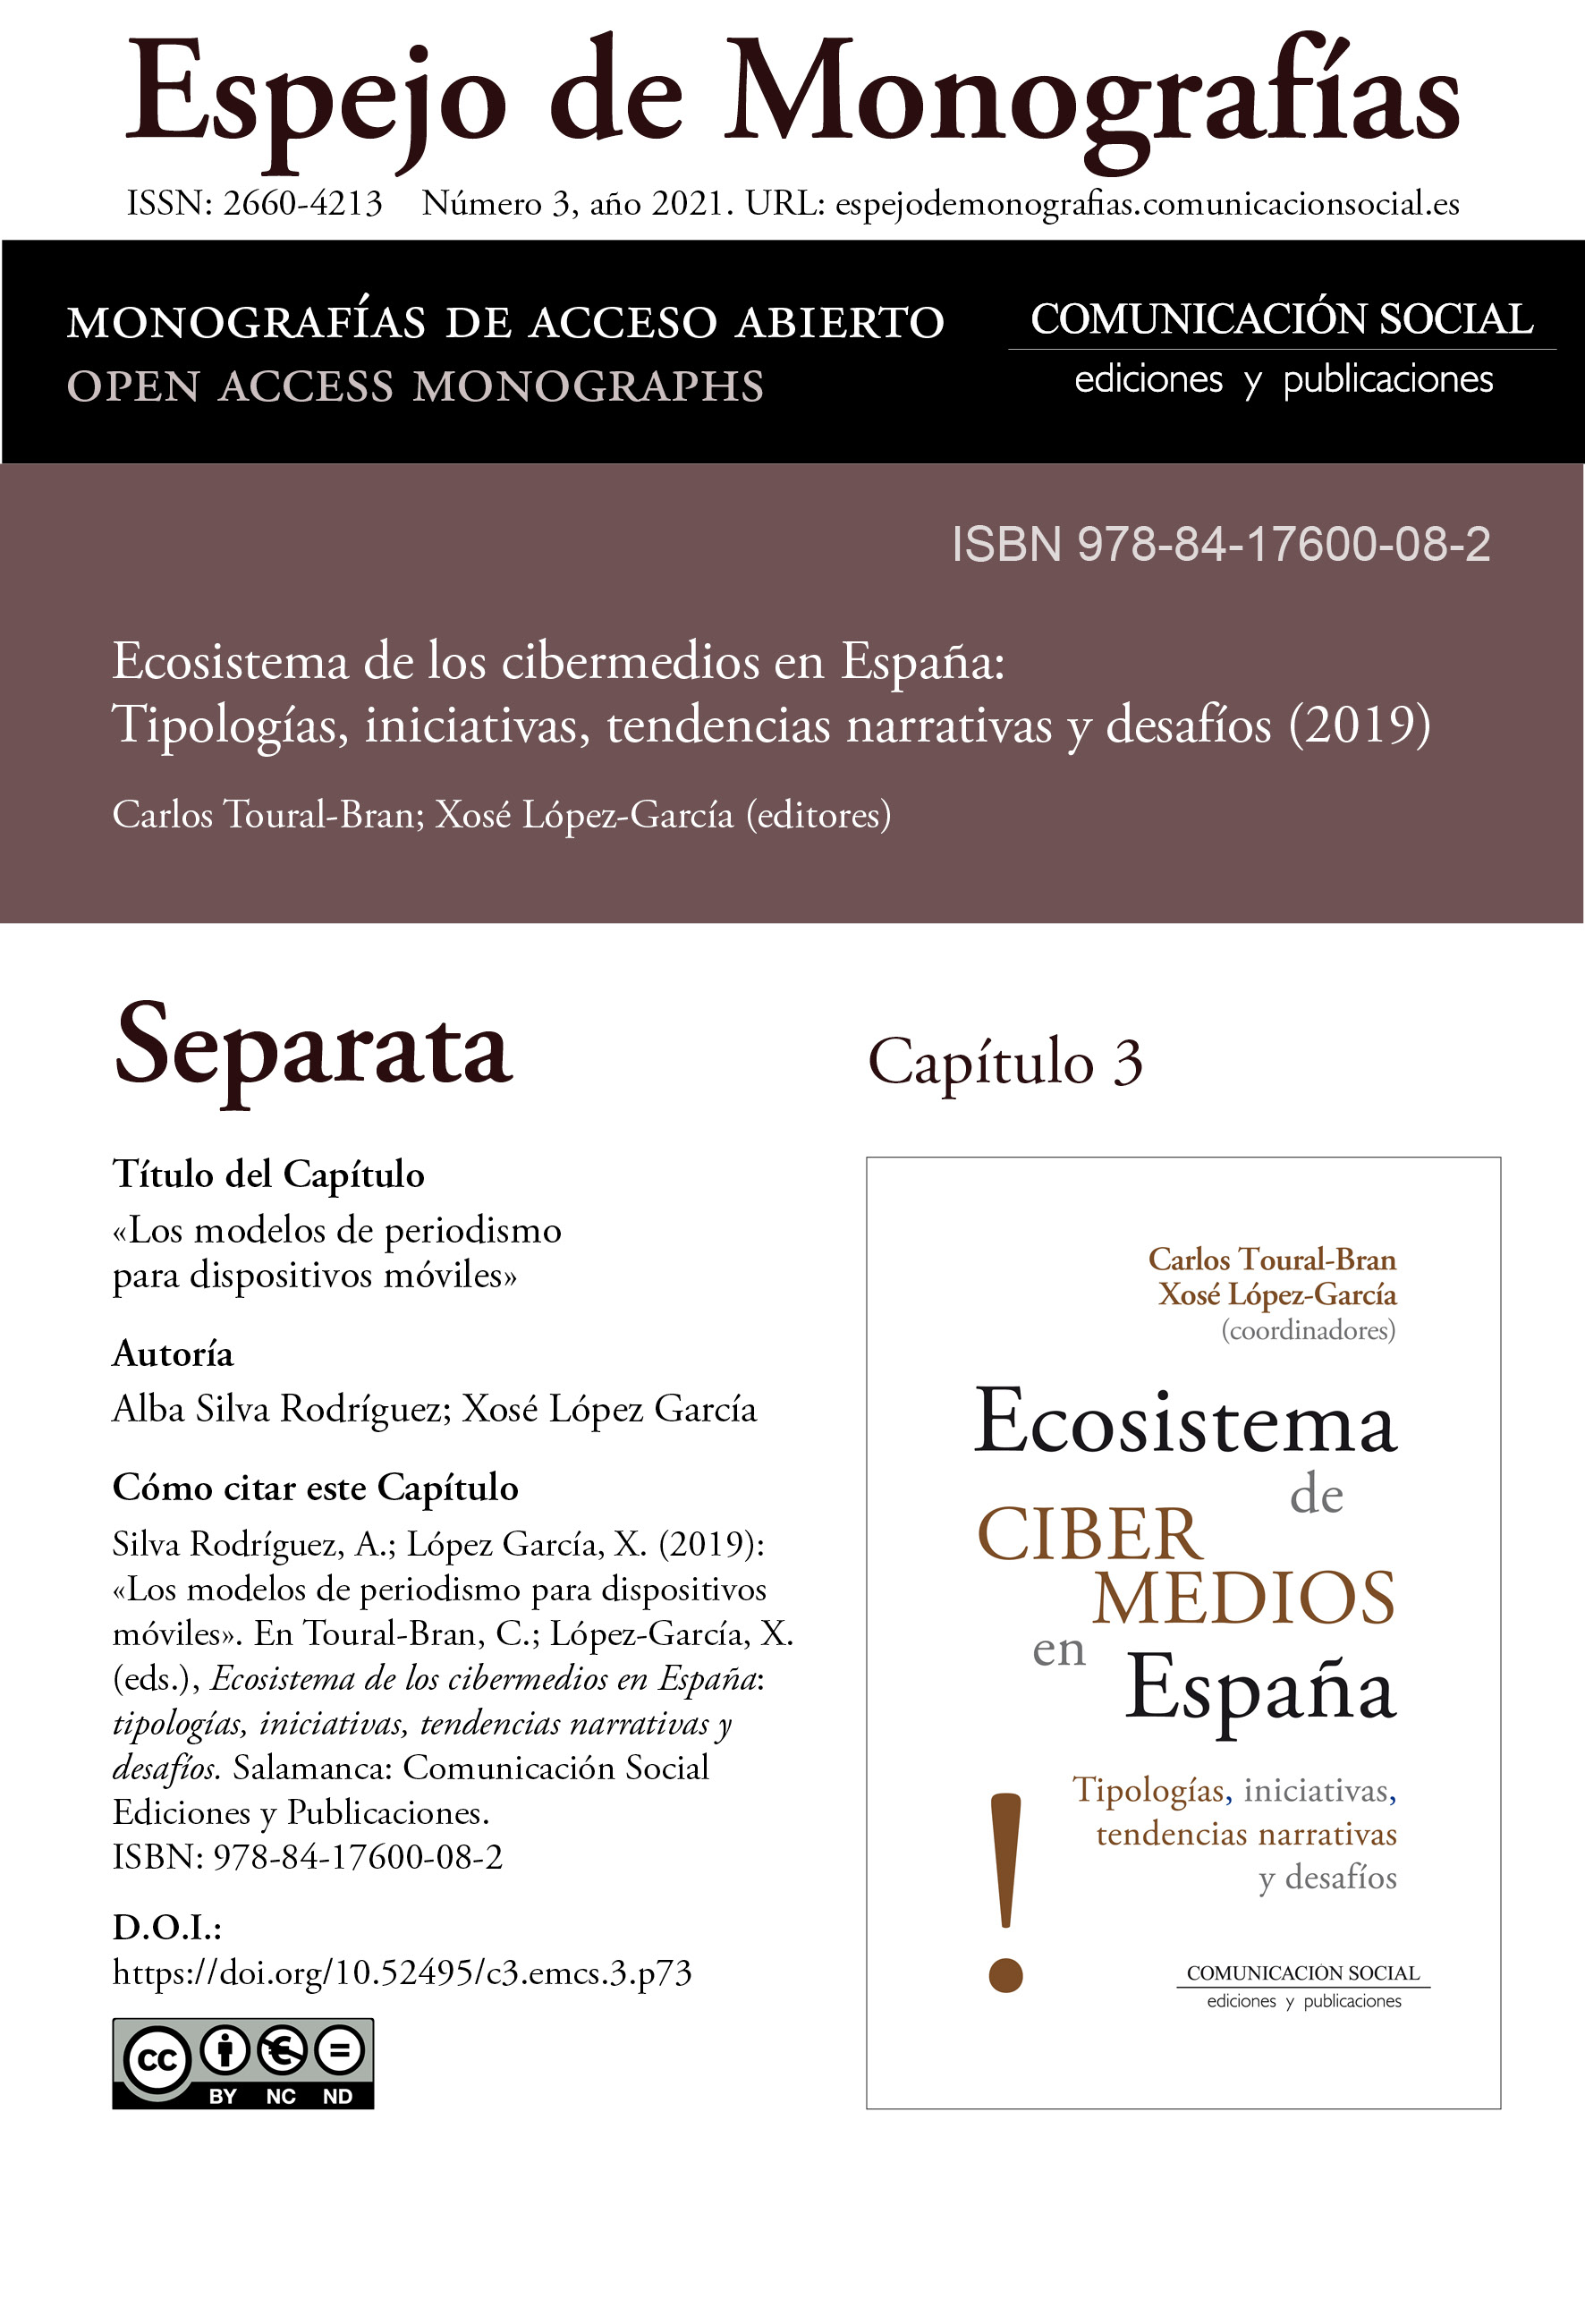 Separata del Capítulo 3 correspondiente a la monografía Ecosistema de cibermedios en España